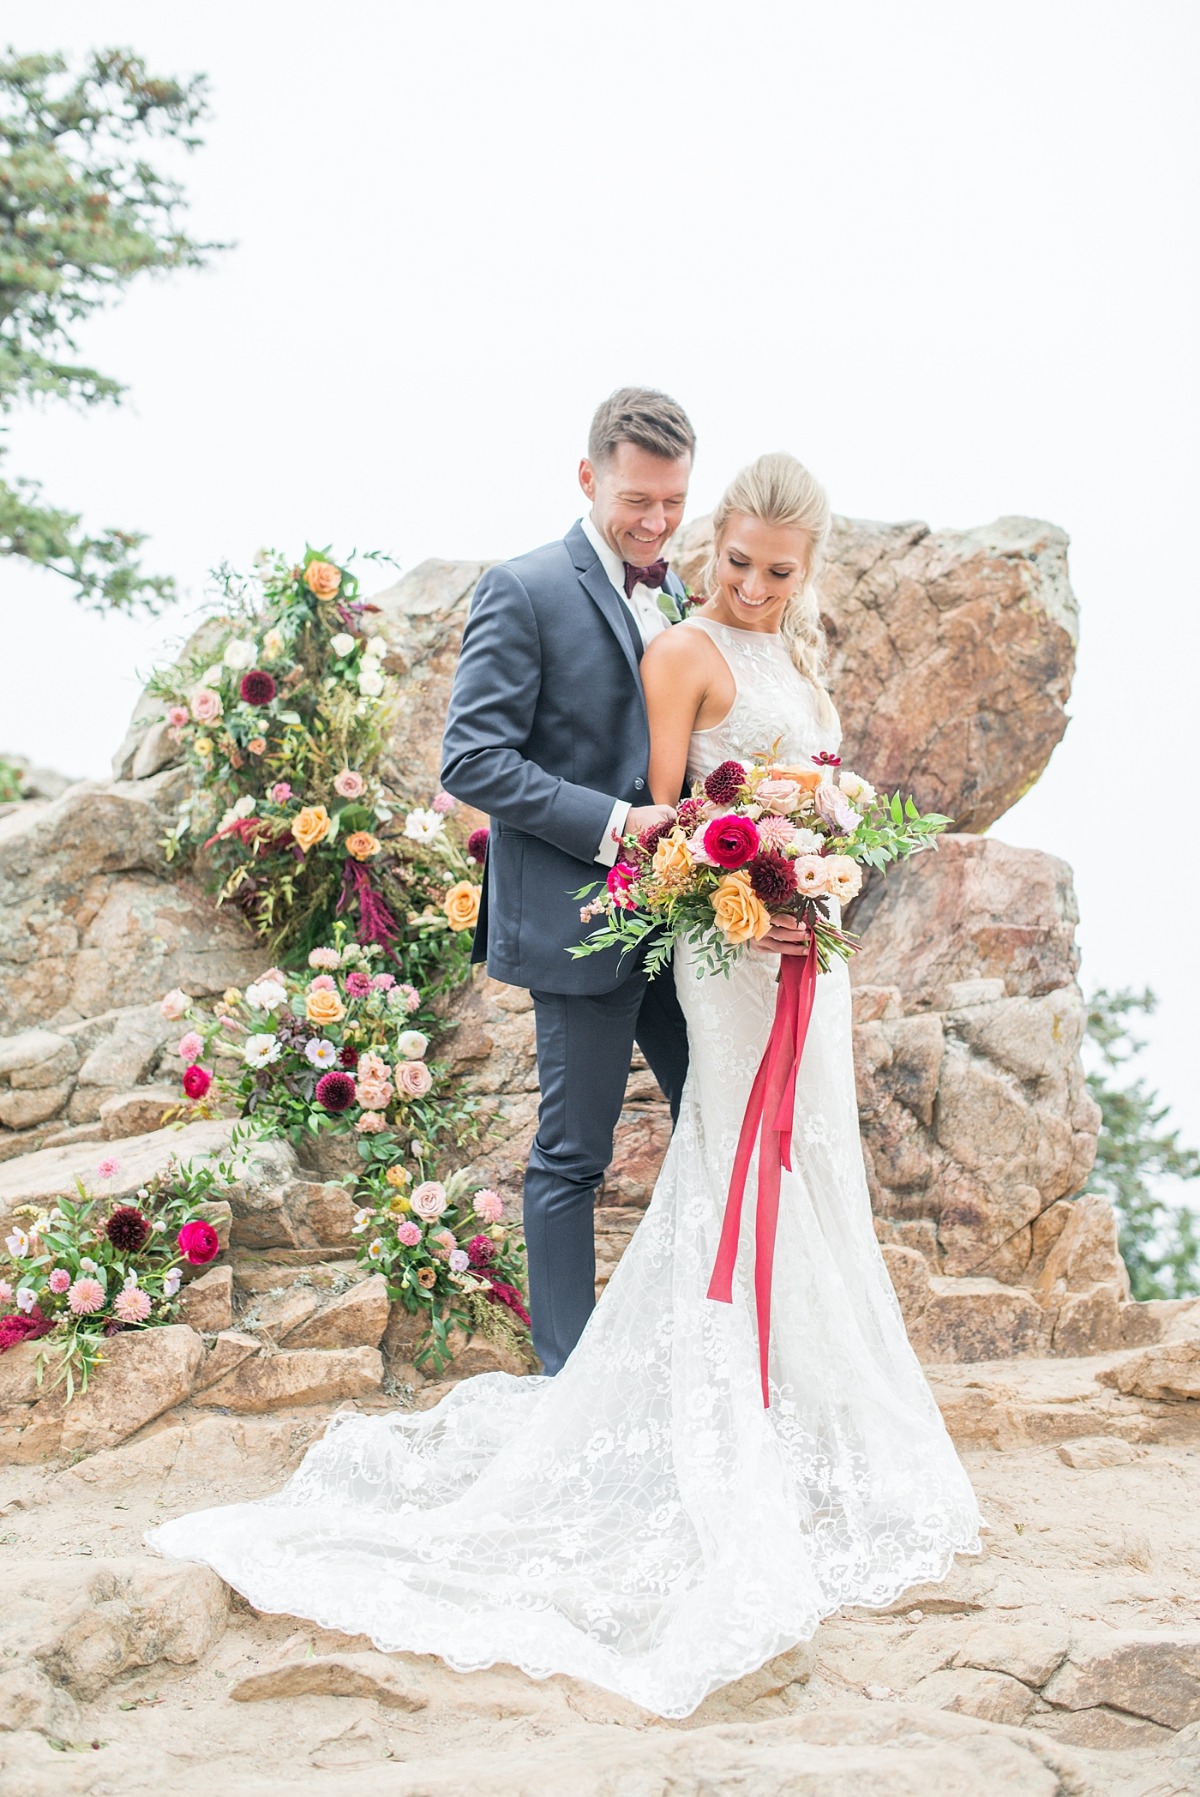 Gorgeous mountain top wedding ideas